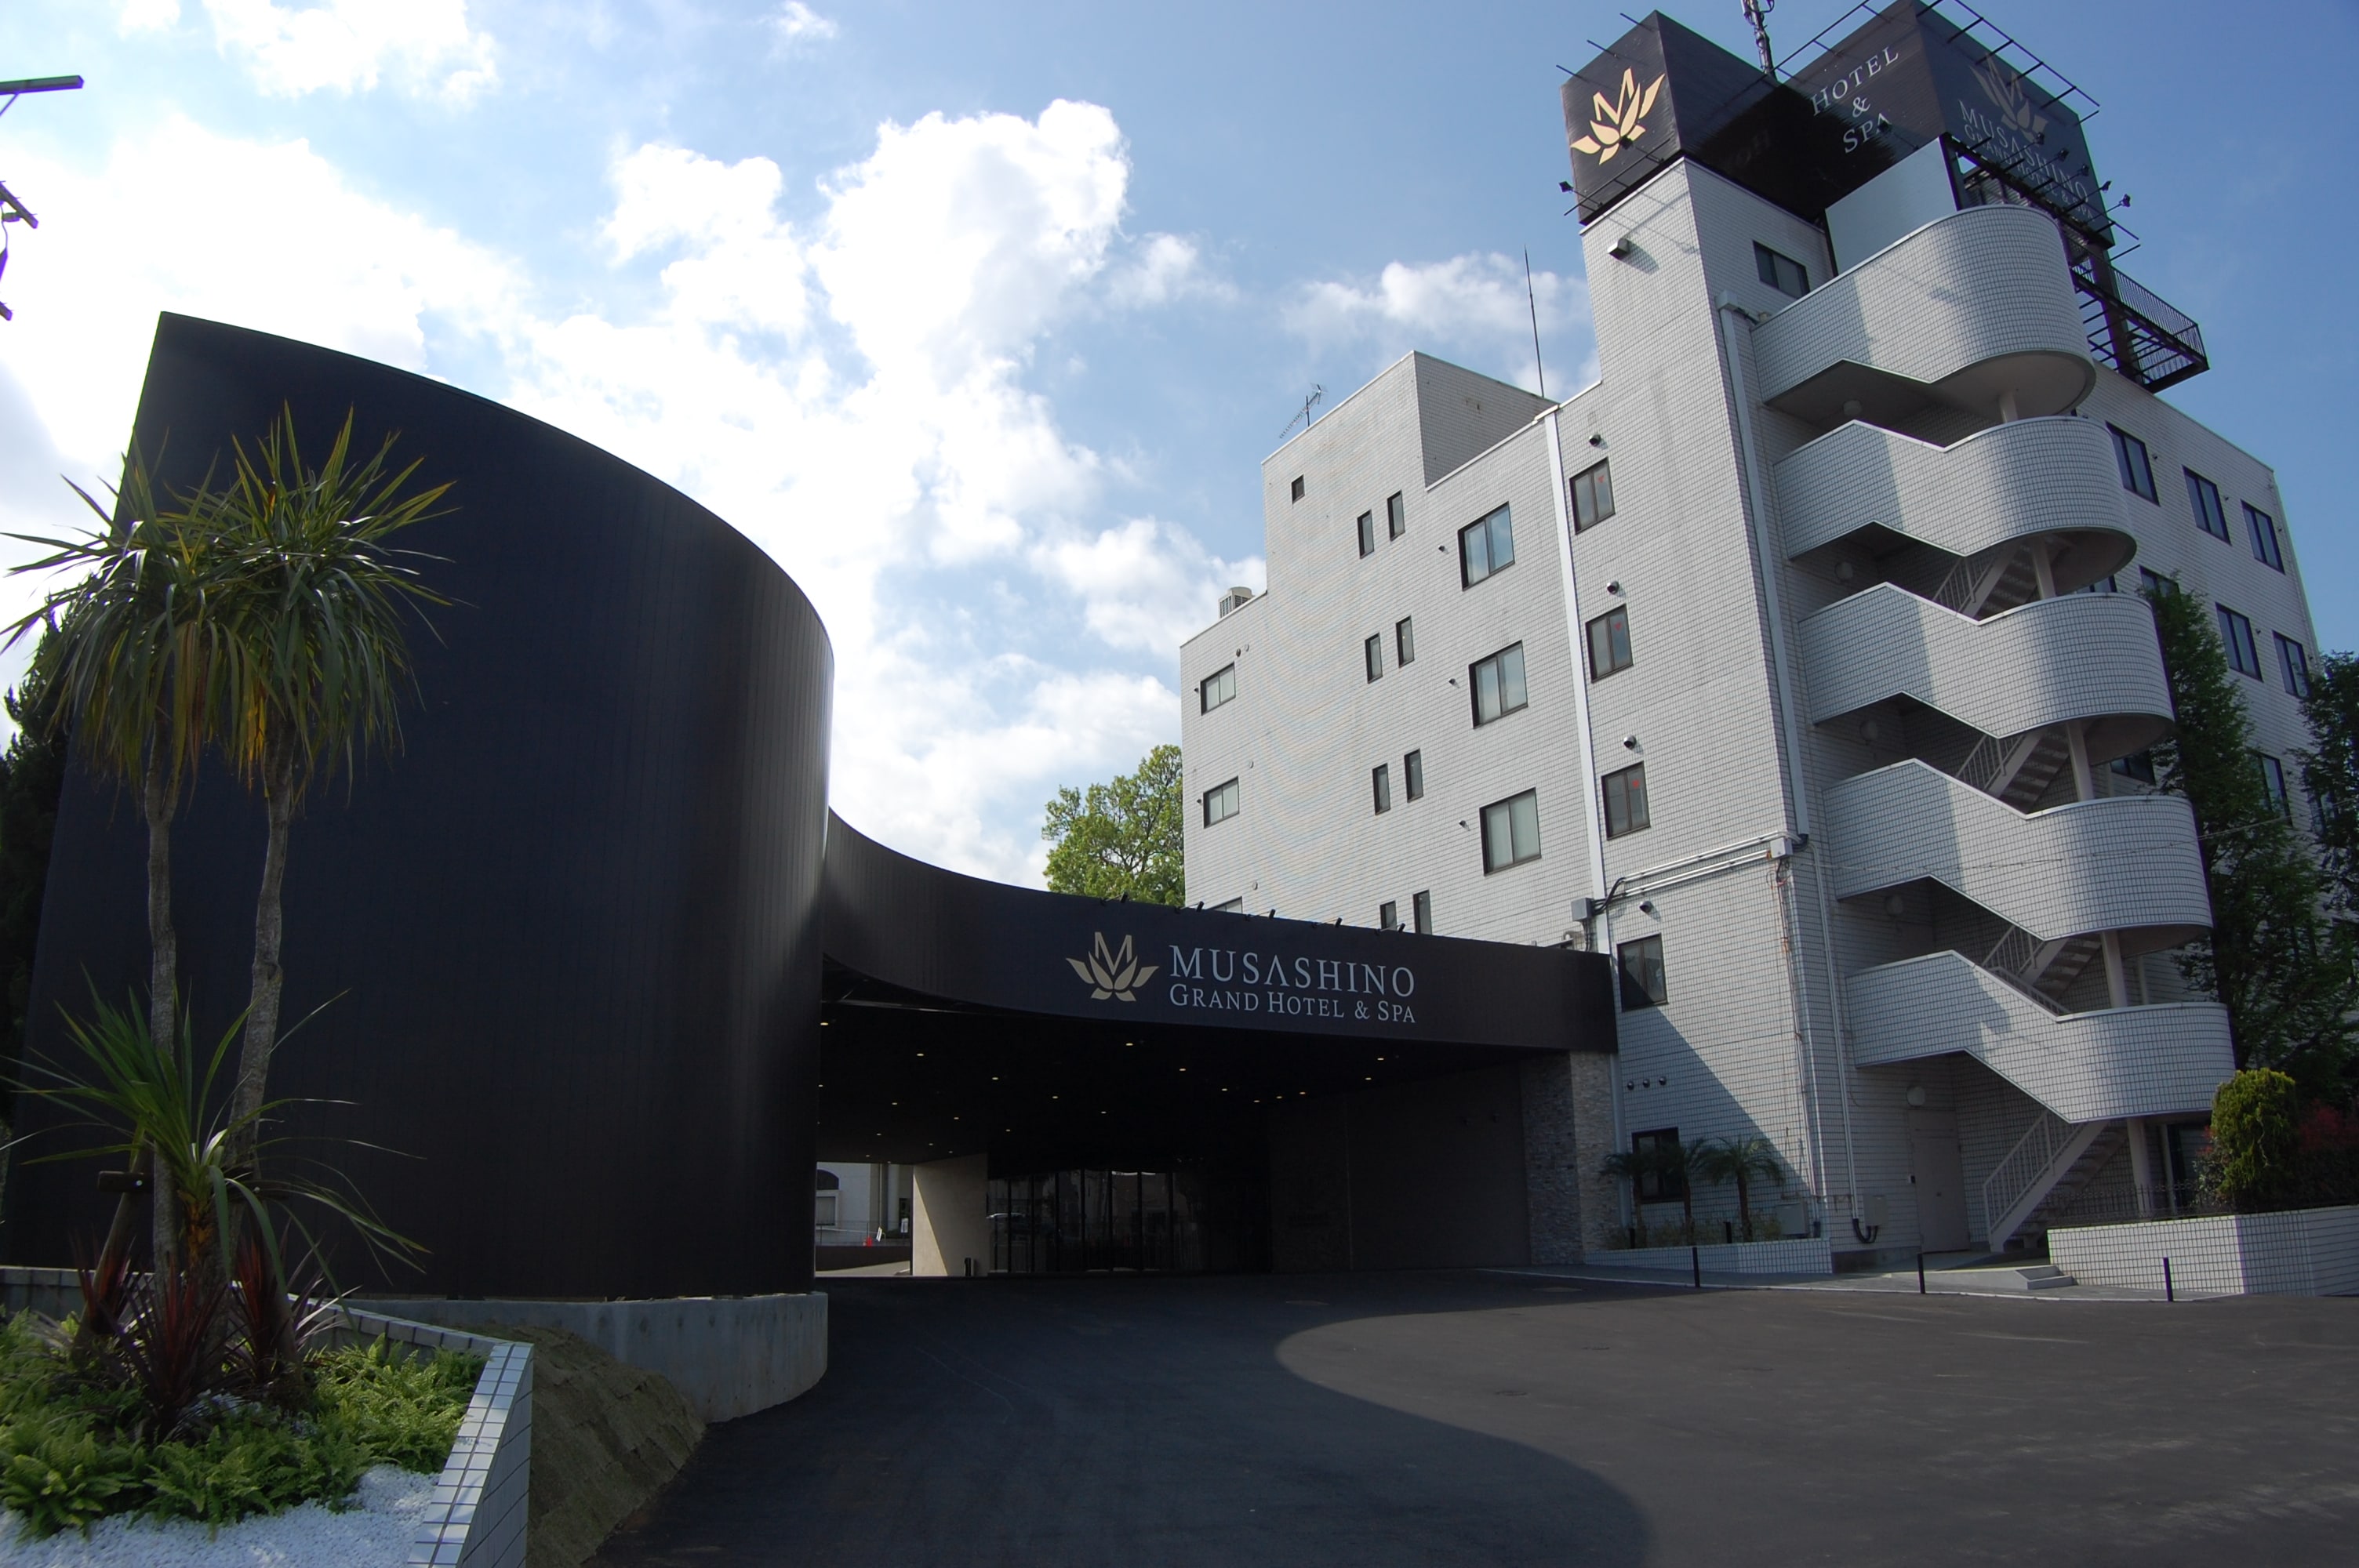 Musashino Grand Hotel & Spa yang baru lahir kembali. Kami menantikan kunjungan Anda